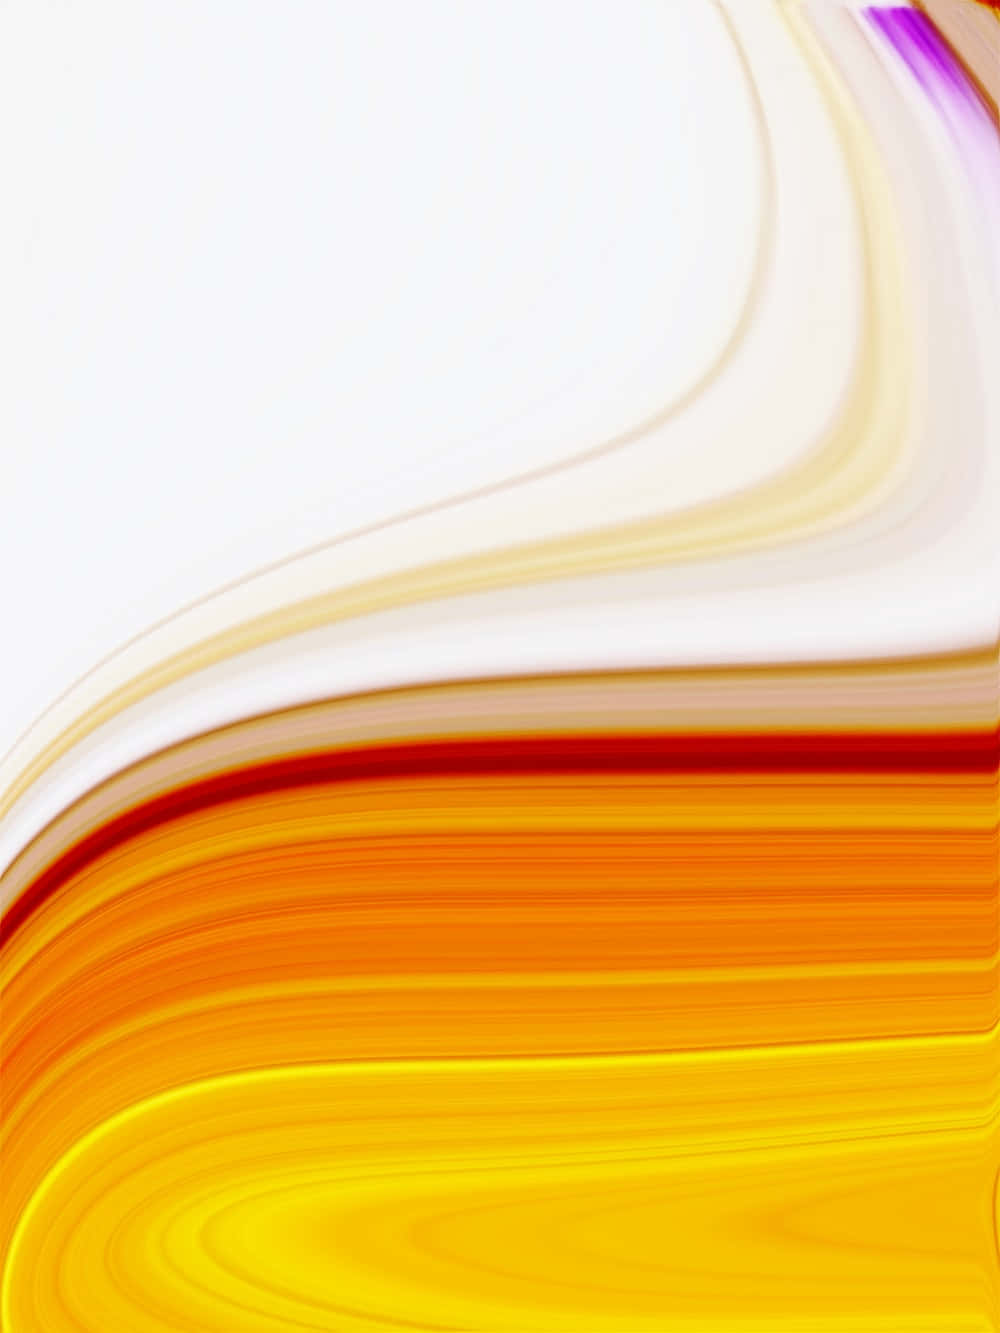 Einfarbenfroher Abstrakter Hintergrund Mit Gelber Und Orangefarbener Farbe